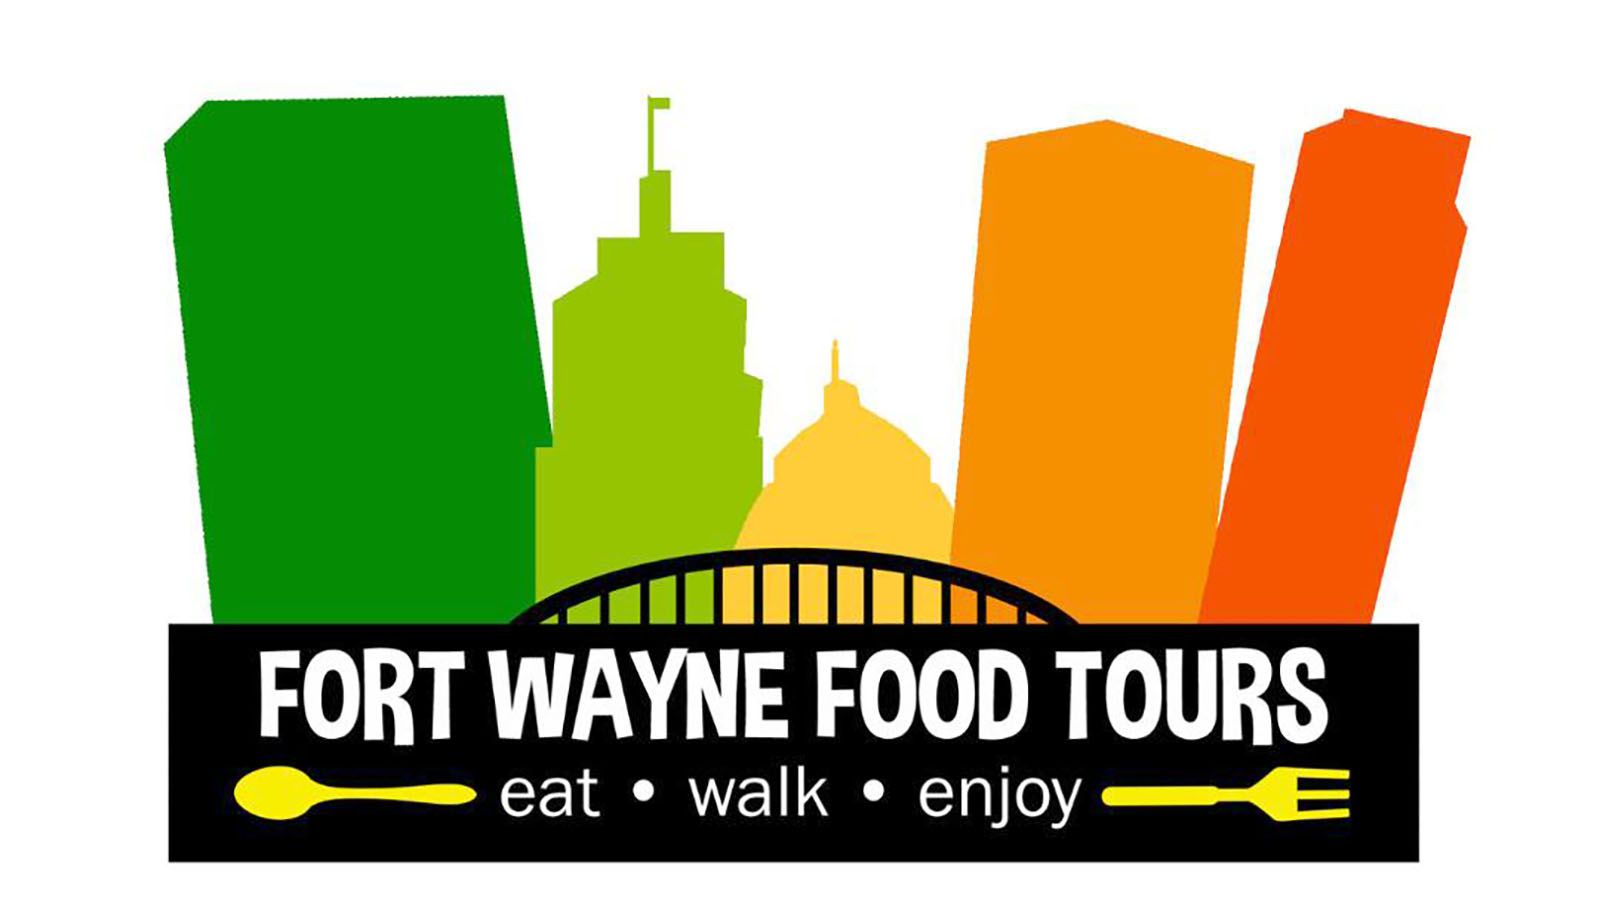 Fort Wayne Food Tours return May 4.